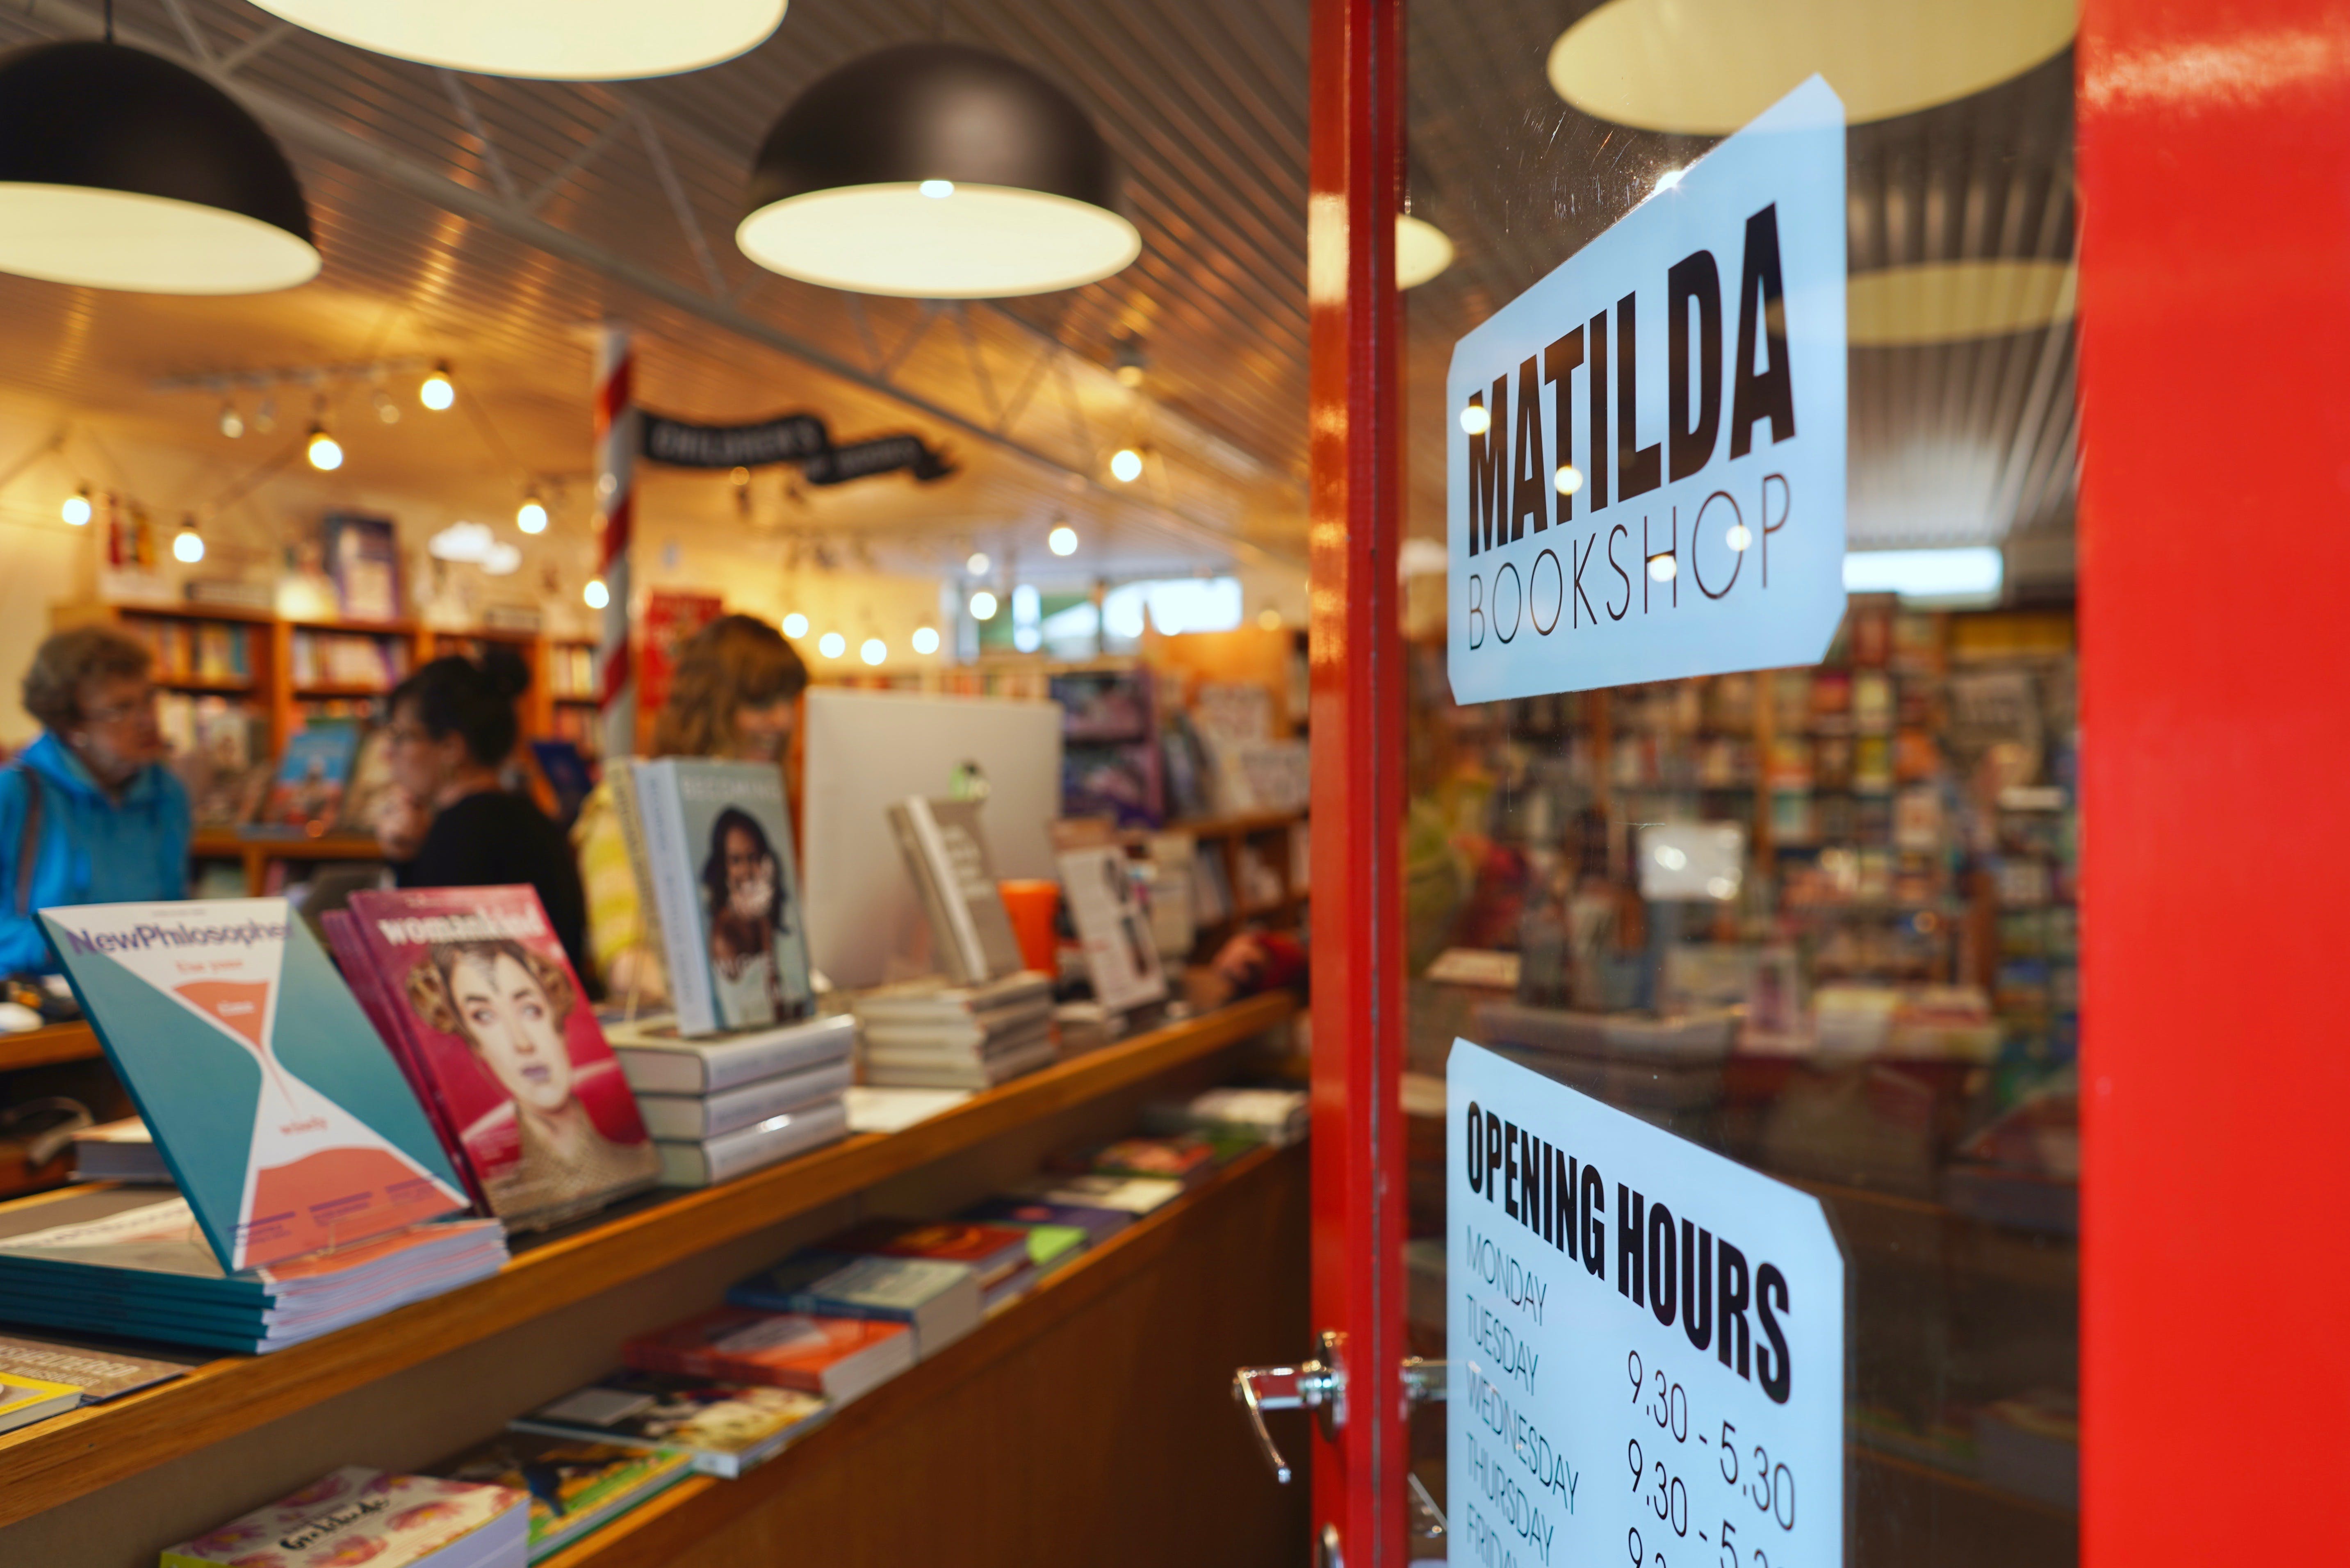 Matilda Bookshop - Find Attractions